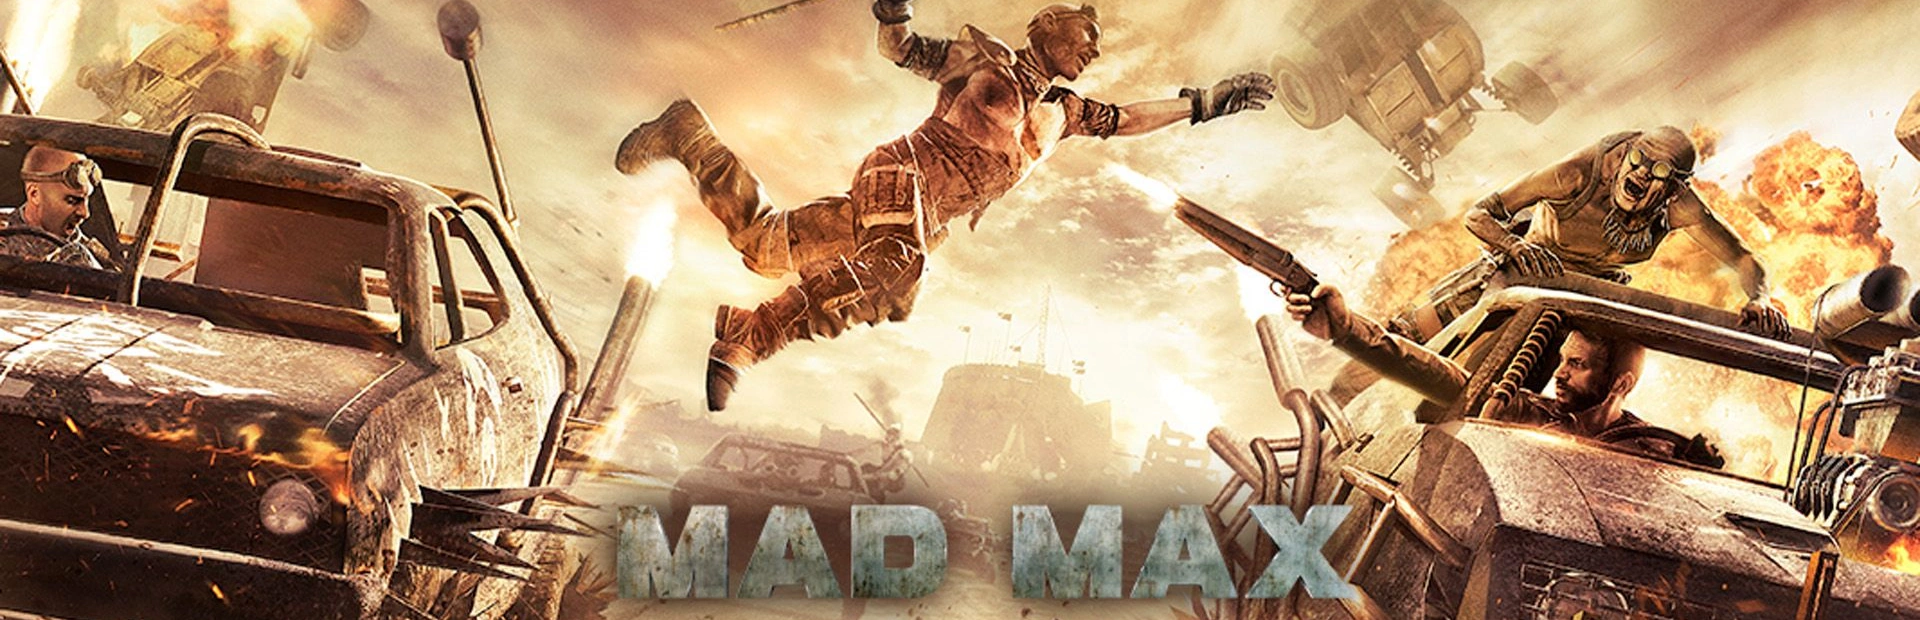 دانلود بازی Mad Max برای کامپیوتر | گیمباتو